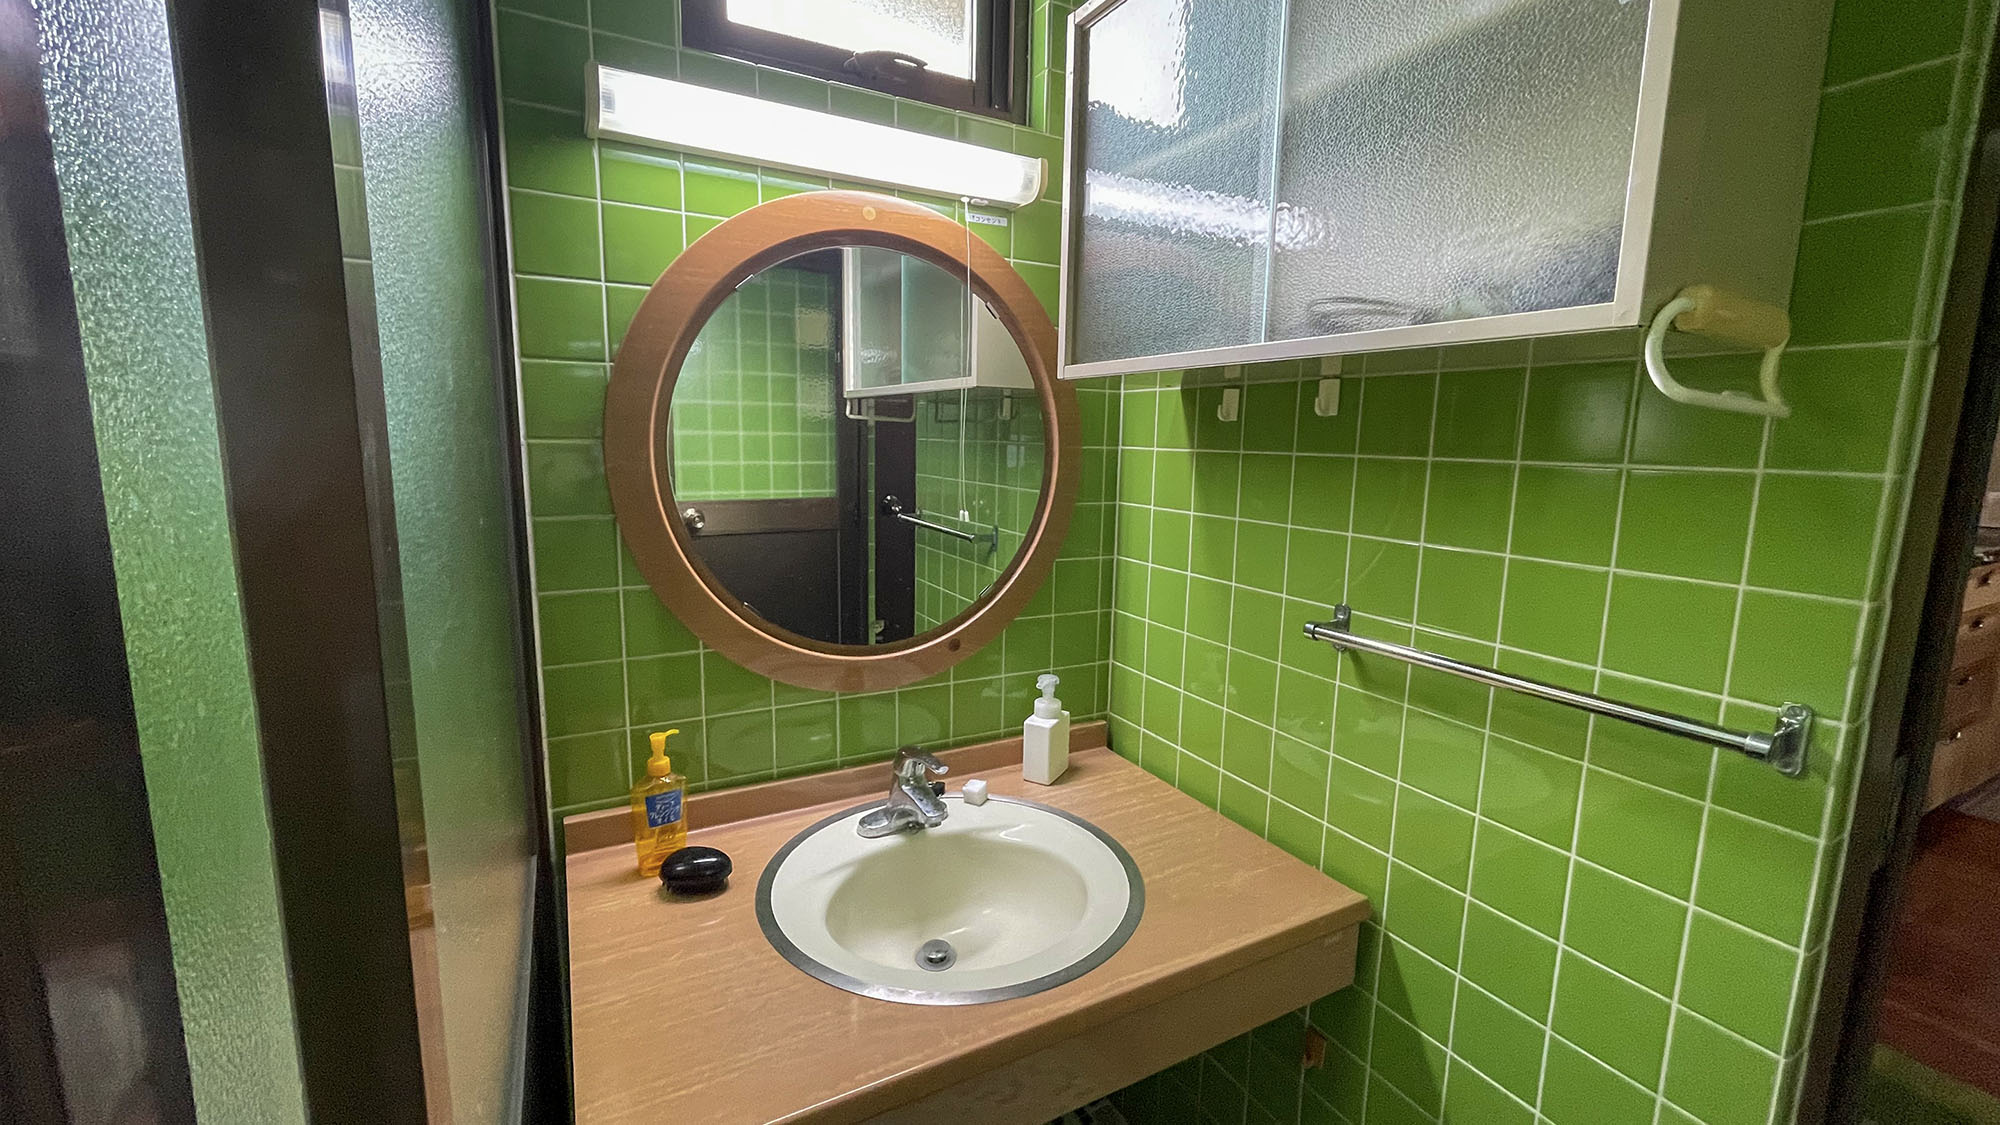 ・明るい緑のタイルを基調とした清潔感のある洗面台